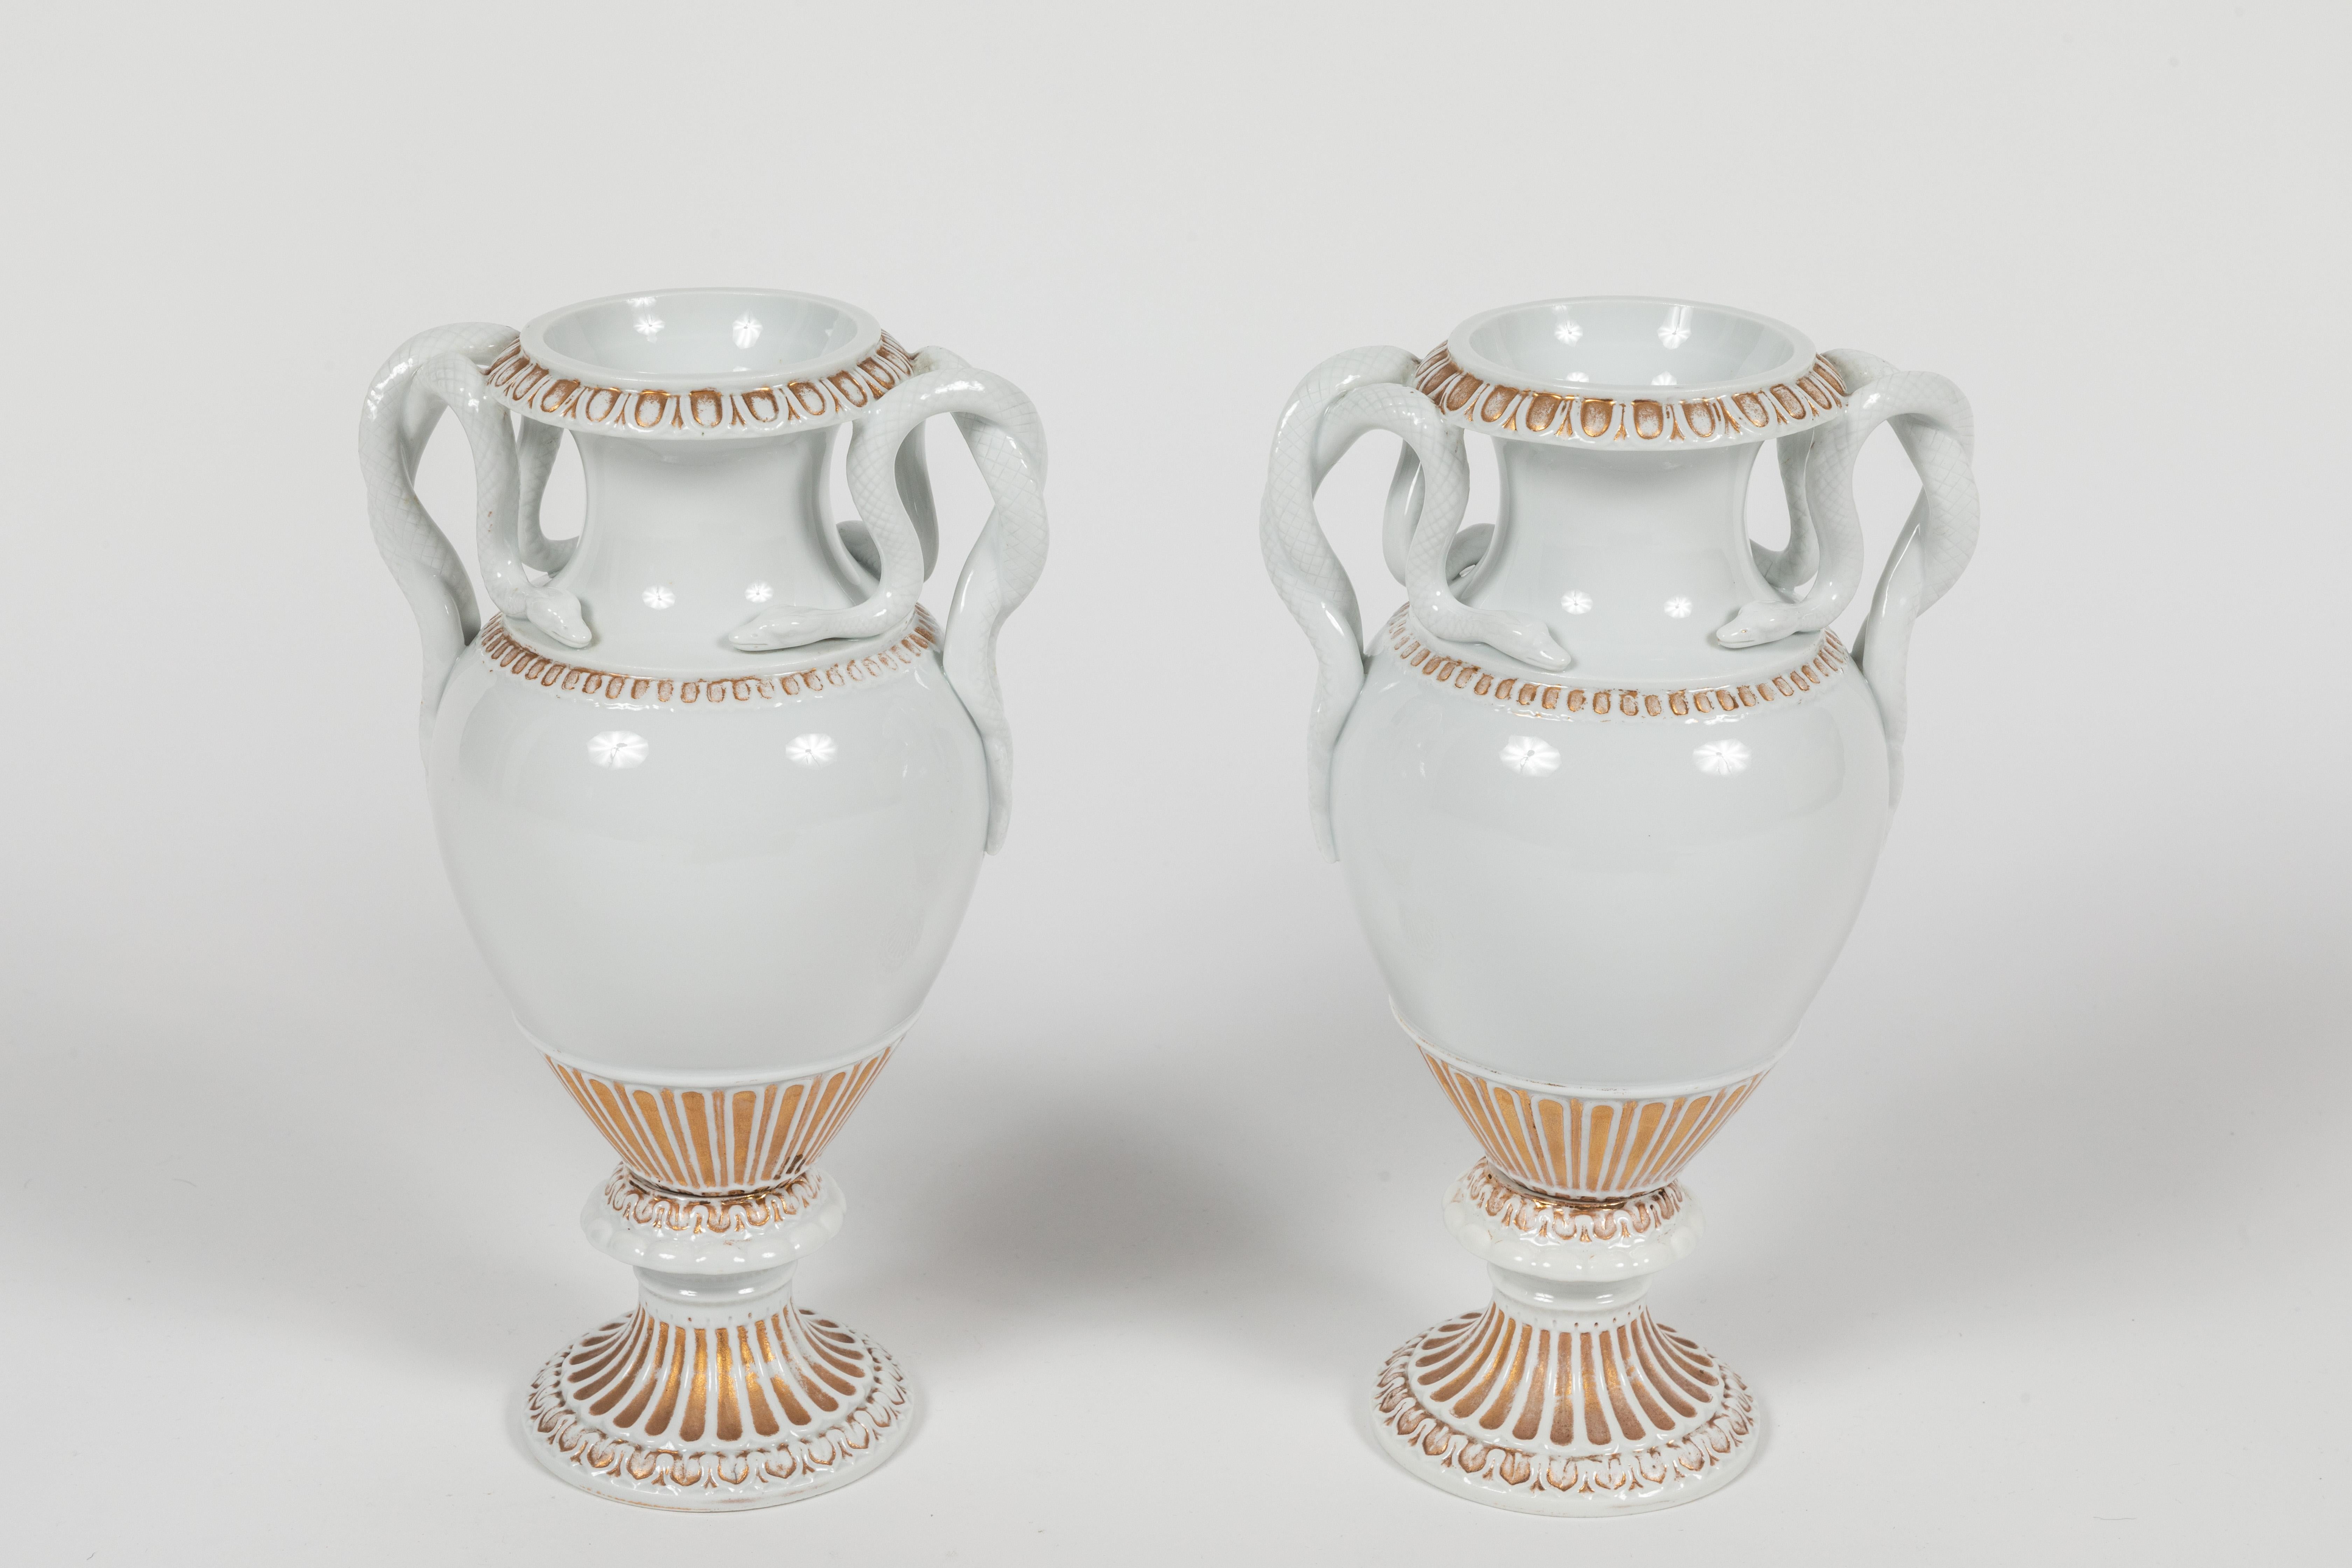 Stilvolles und schickes Paar Meissener Urnen aus klassisch glasiertem weißem Porzellan mit Goldakzenten. Diese Urnen haben eine klassische Form und weisen verschlungene Schlangen als Henkel auf. Ein zeitloses Design, das sich sowohl in klassischen